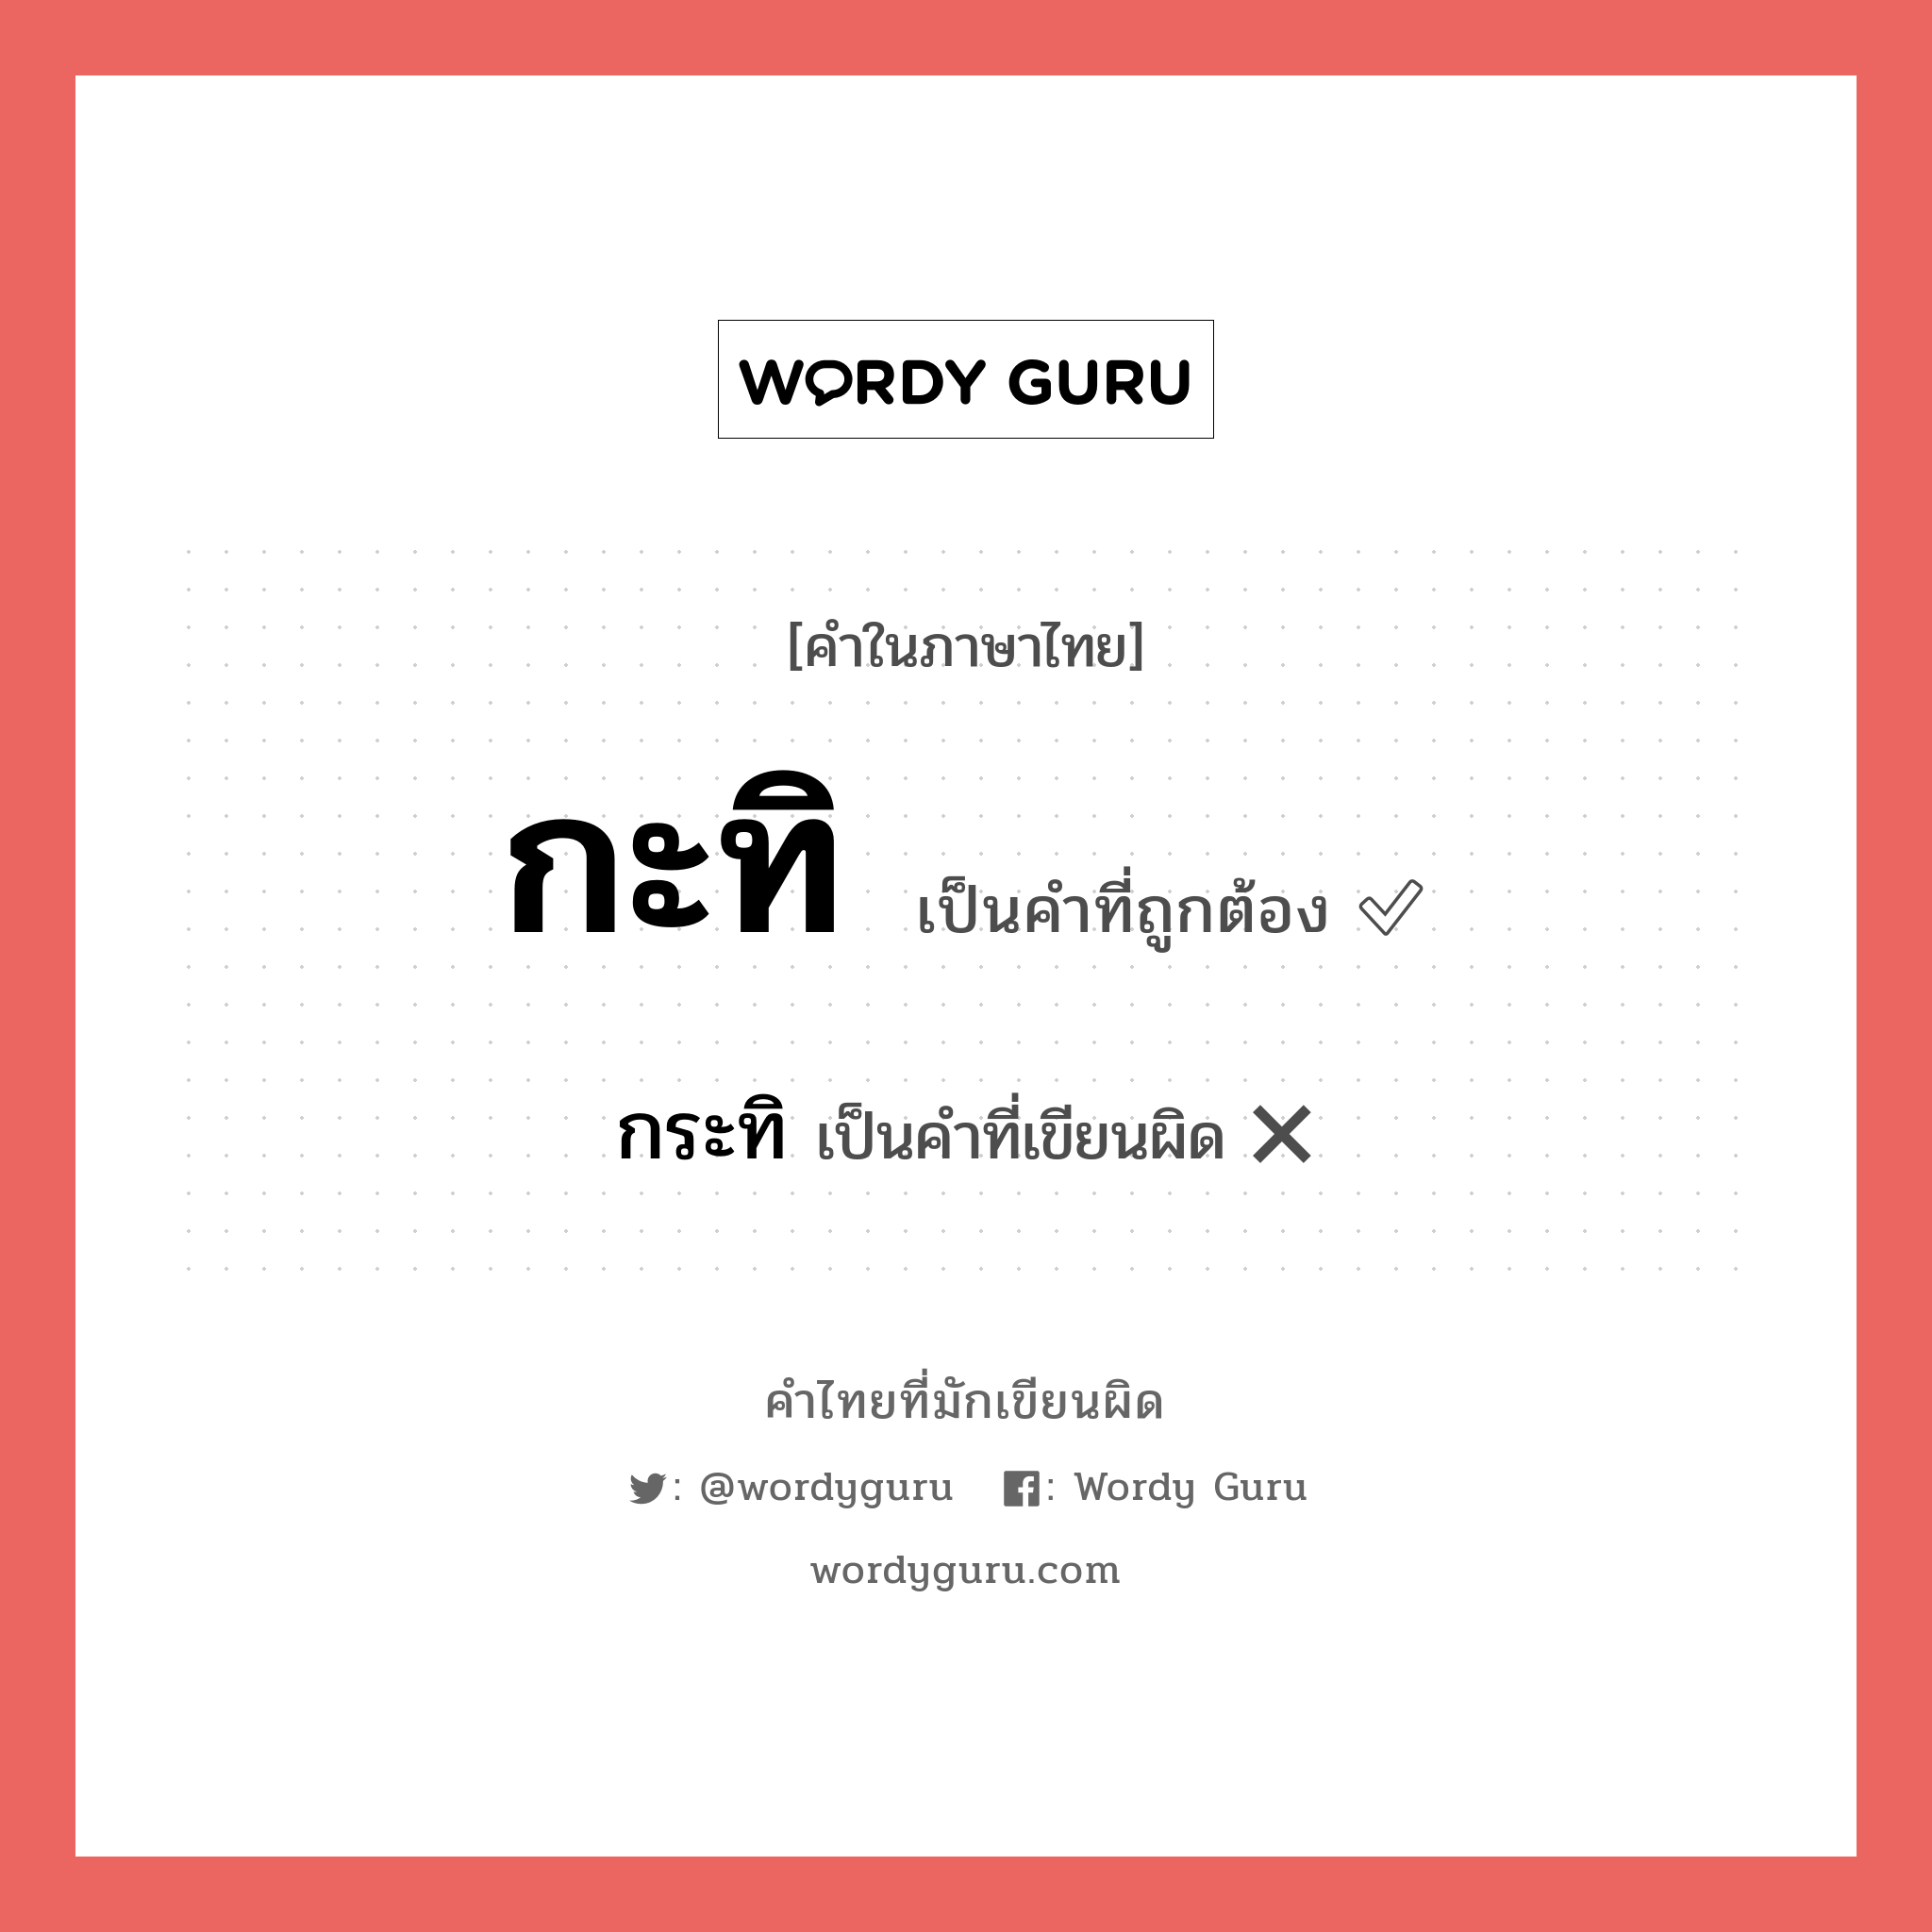 กะทิ หรือ กระทิ คำไหนเขียนถูก?, คำในภาษาไทยที่มักเขียนผิด กะทิ คำที่ผิด ❌ กระทิ